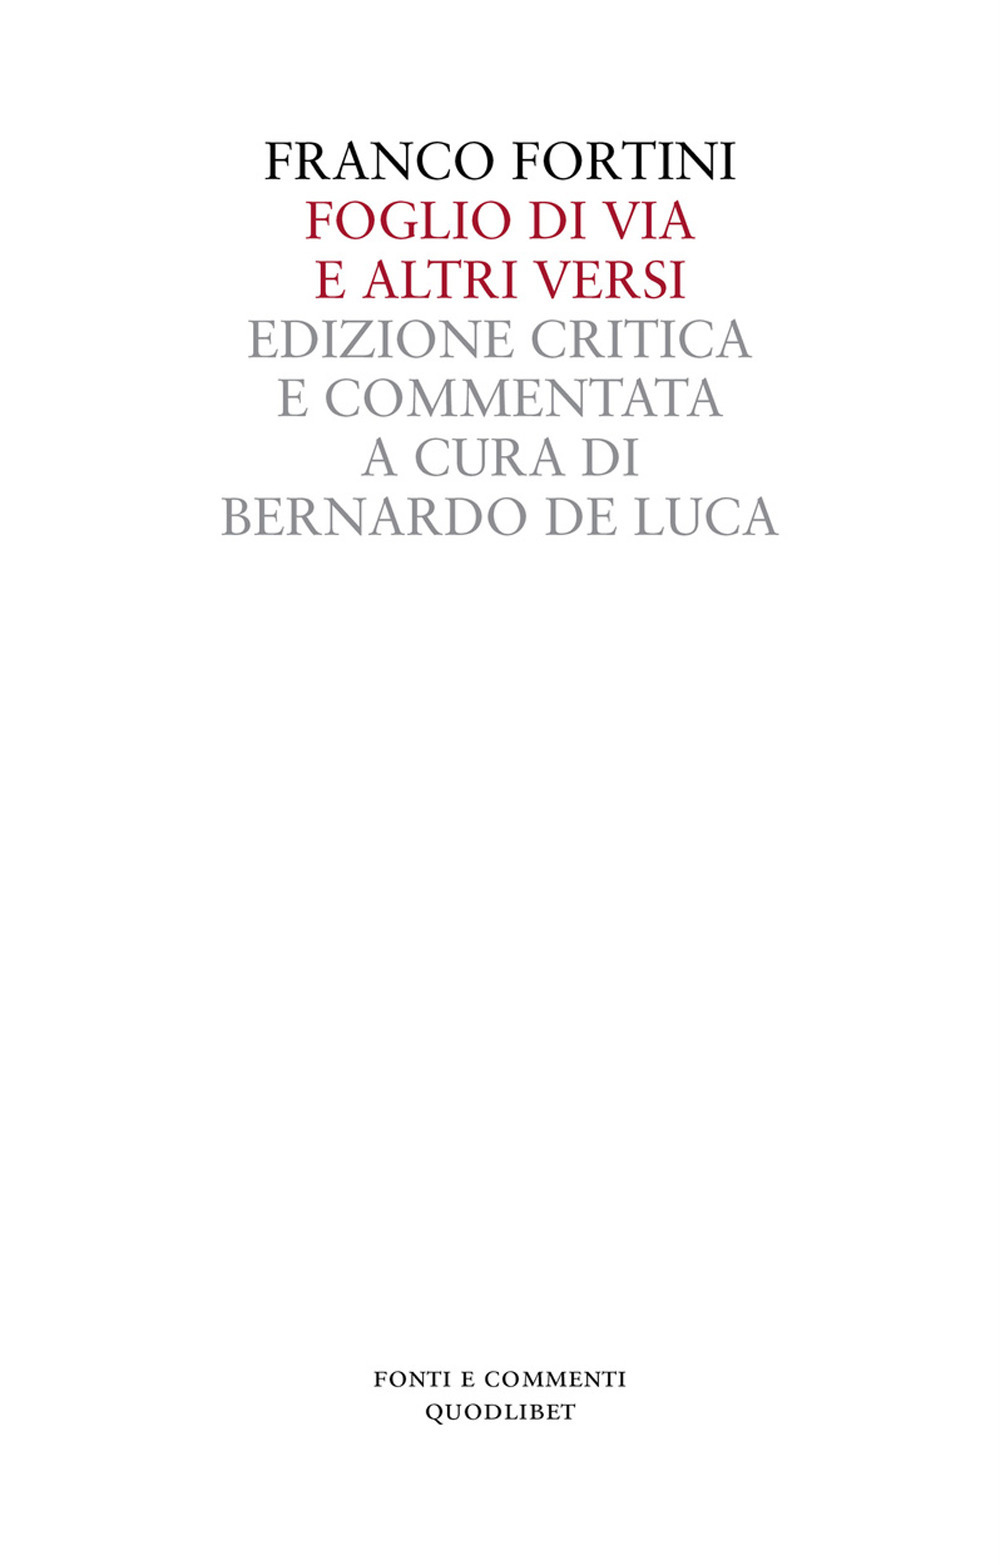 Libri Franco Fortini - Foglio Di Via E Altri Versi. Ediz. Critica NUOVO SIGILLATO, EDIZIONE DEL 05/04/2018 SUBITO DISPONIBILE